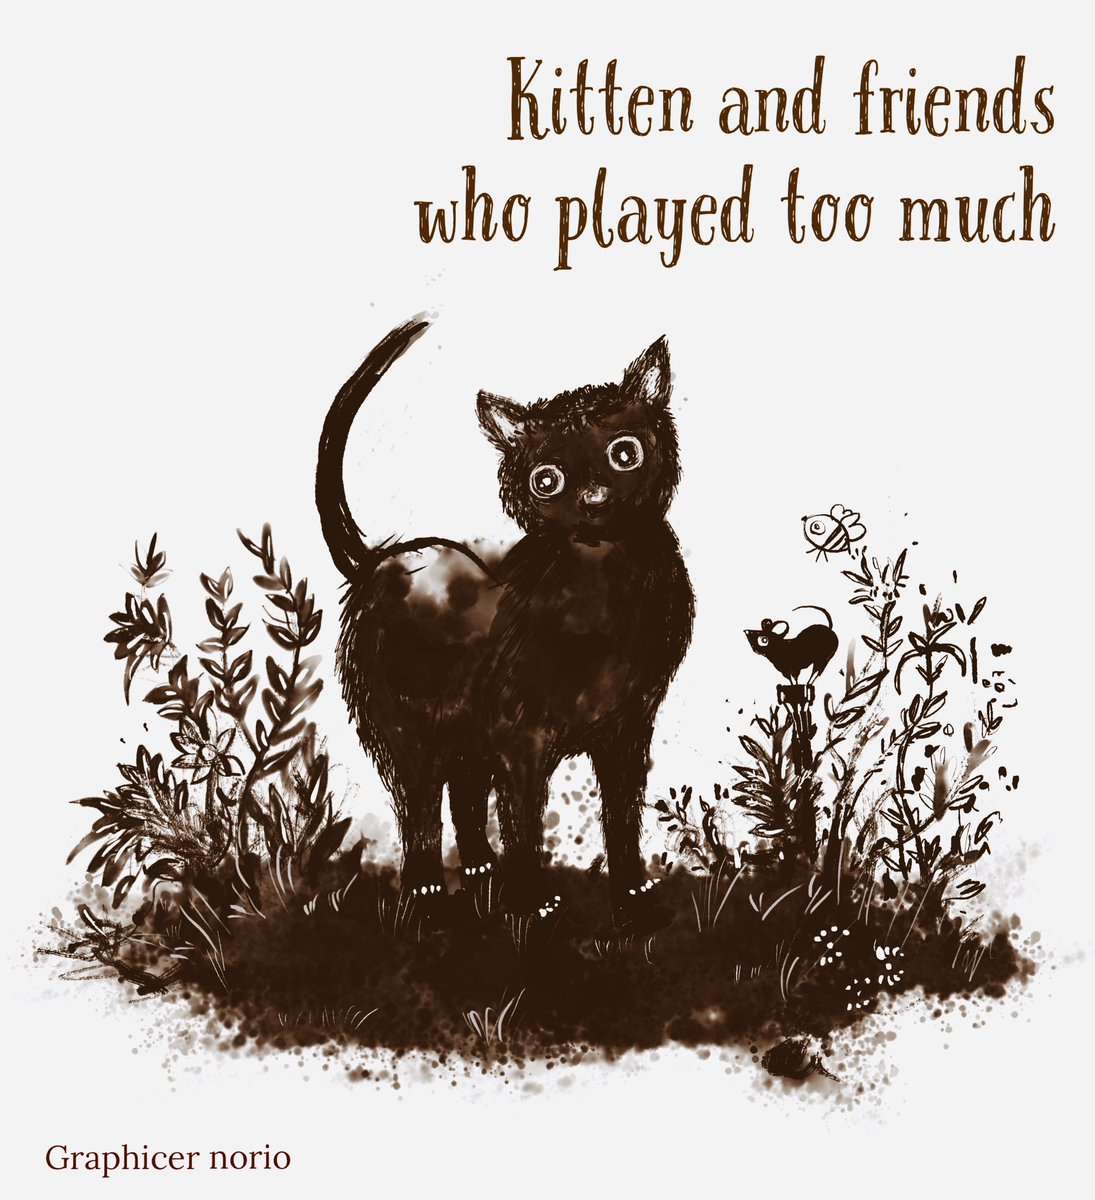 遊びすぎた仔猫と友だち 仔猫とねずみとミツバチ 満足な3人 #illustration #drawingart #graphicart #picturebook #childrenbook #kitten #catlover